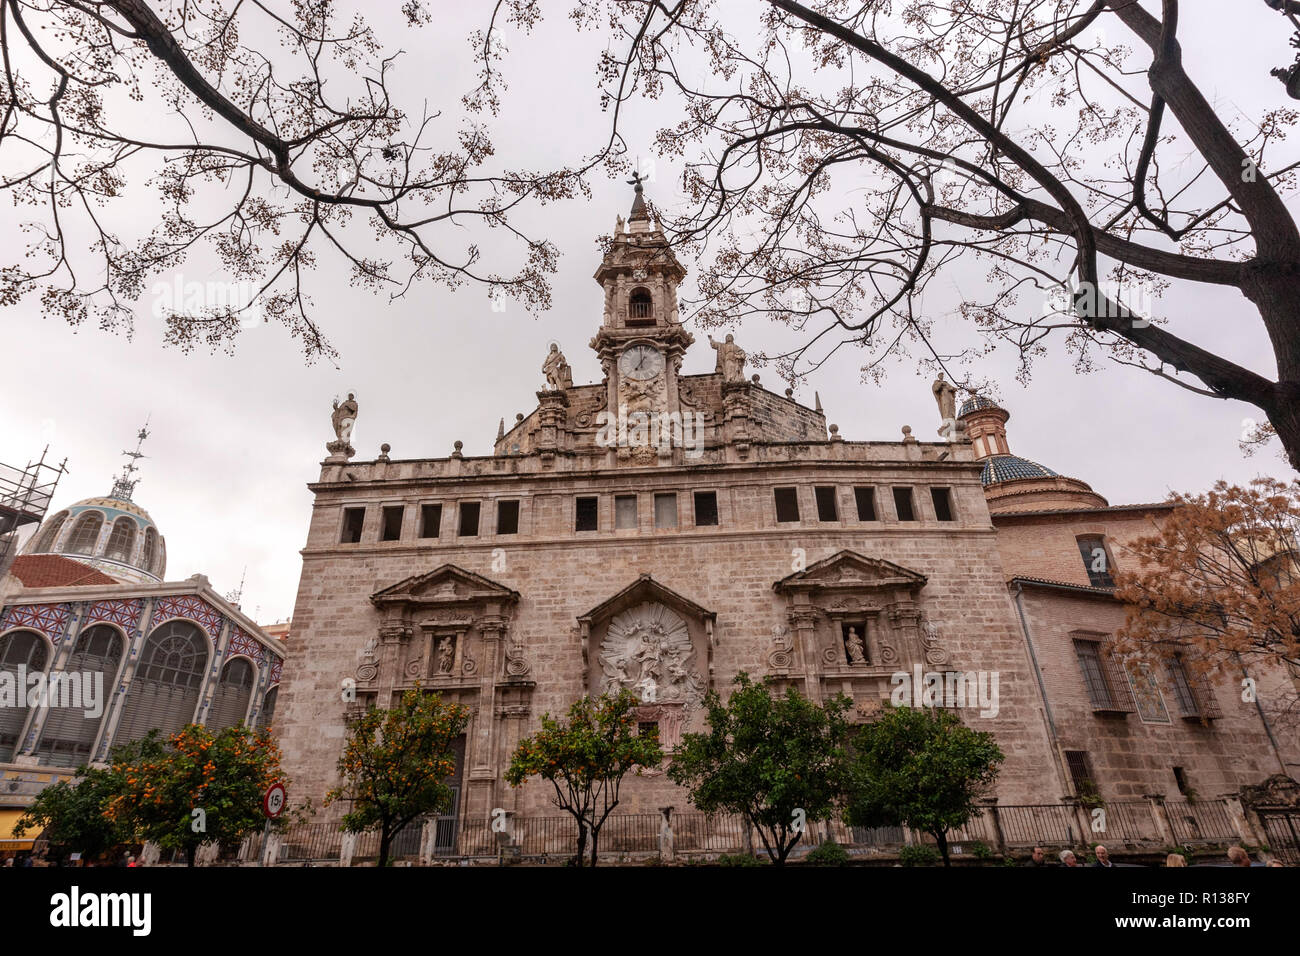 Fassade des La Lonja, die llotja de la Seda oder die La Lonja Seide Austausch Valencia, Spanien Stockfoto